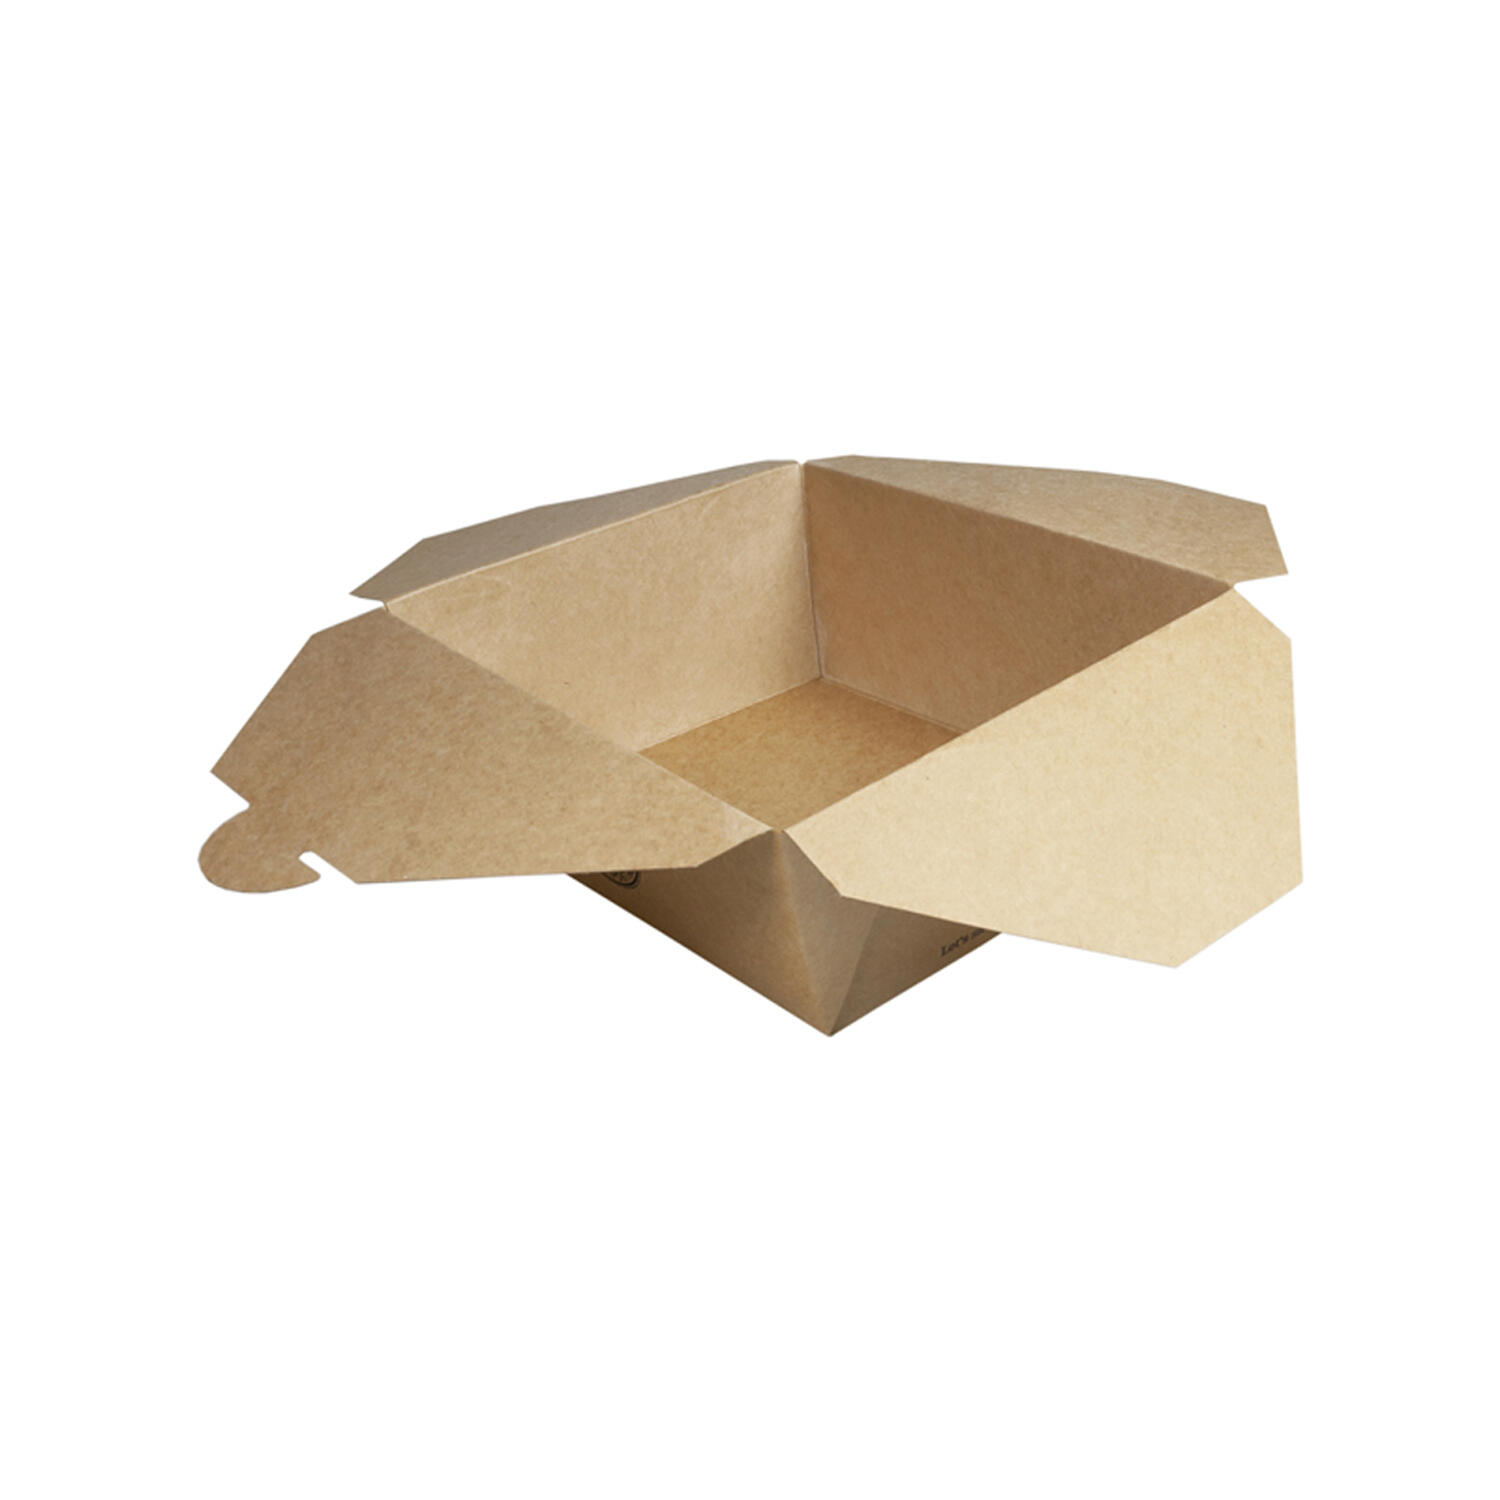 BIO Take-Away Boxen Menboxen ToGo aus Karton, 17.2x14x6.4cm, 25 Stk.